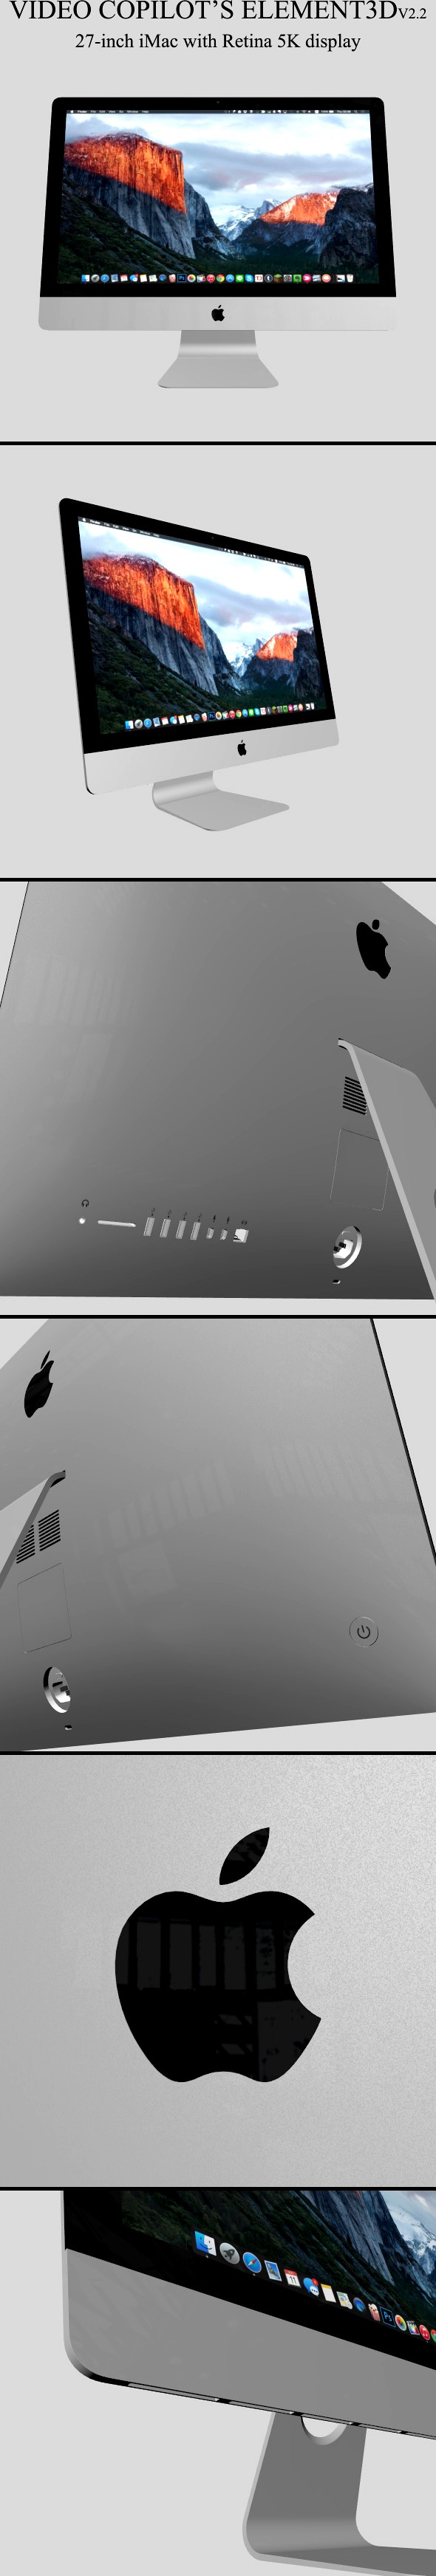 Element3D - iMac Retina 5K 2015